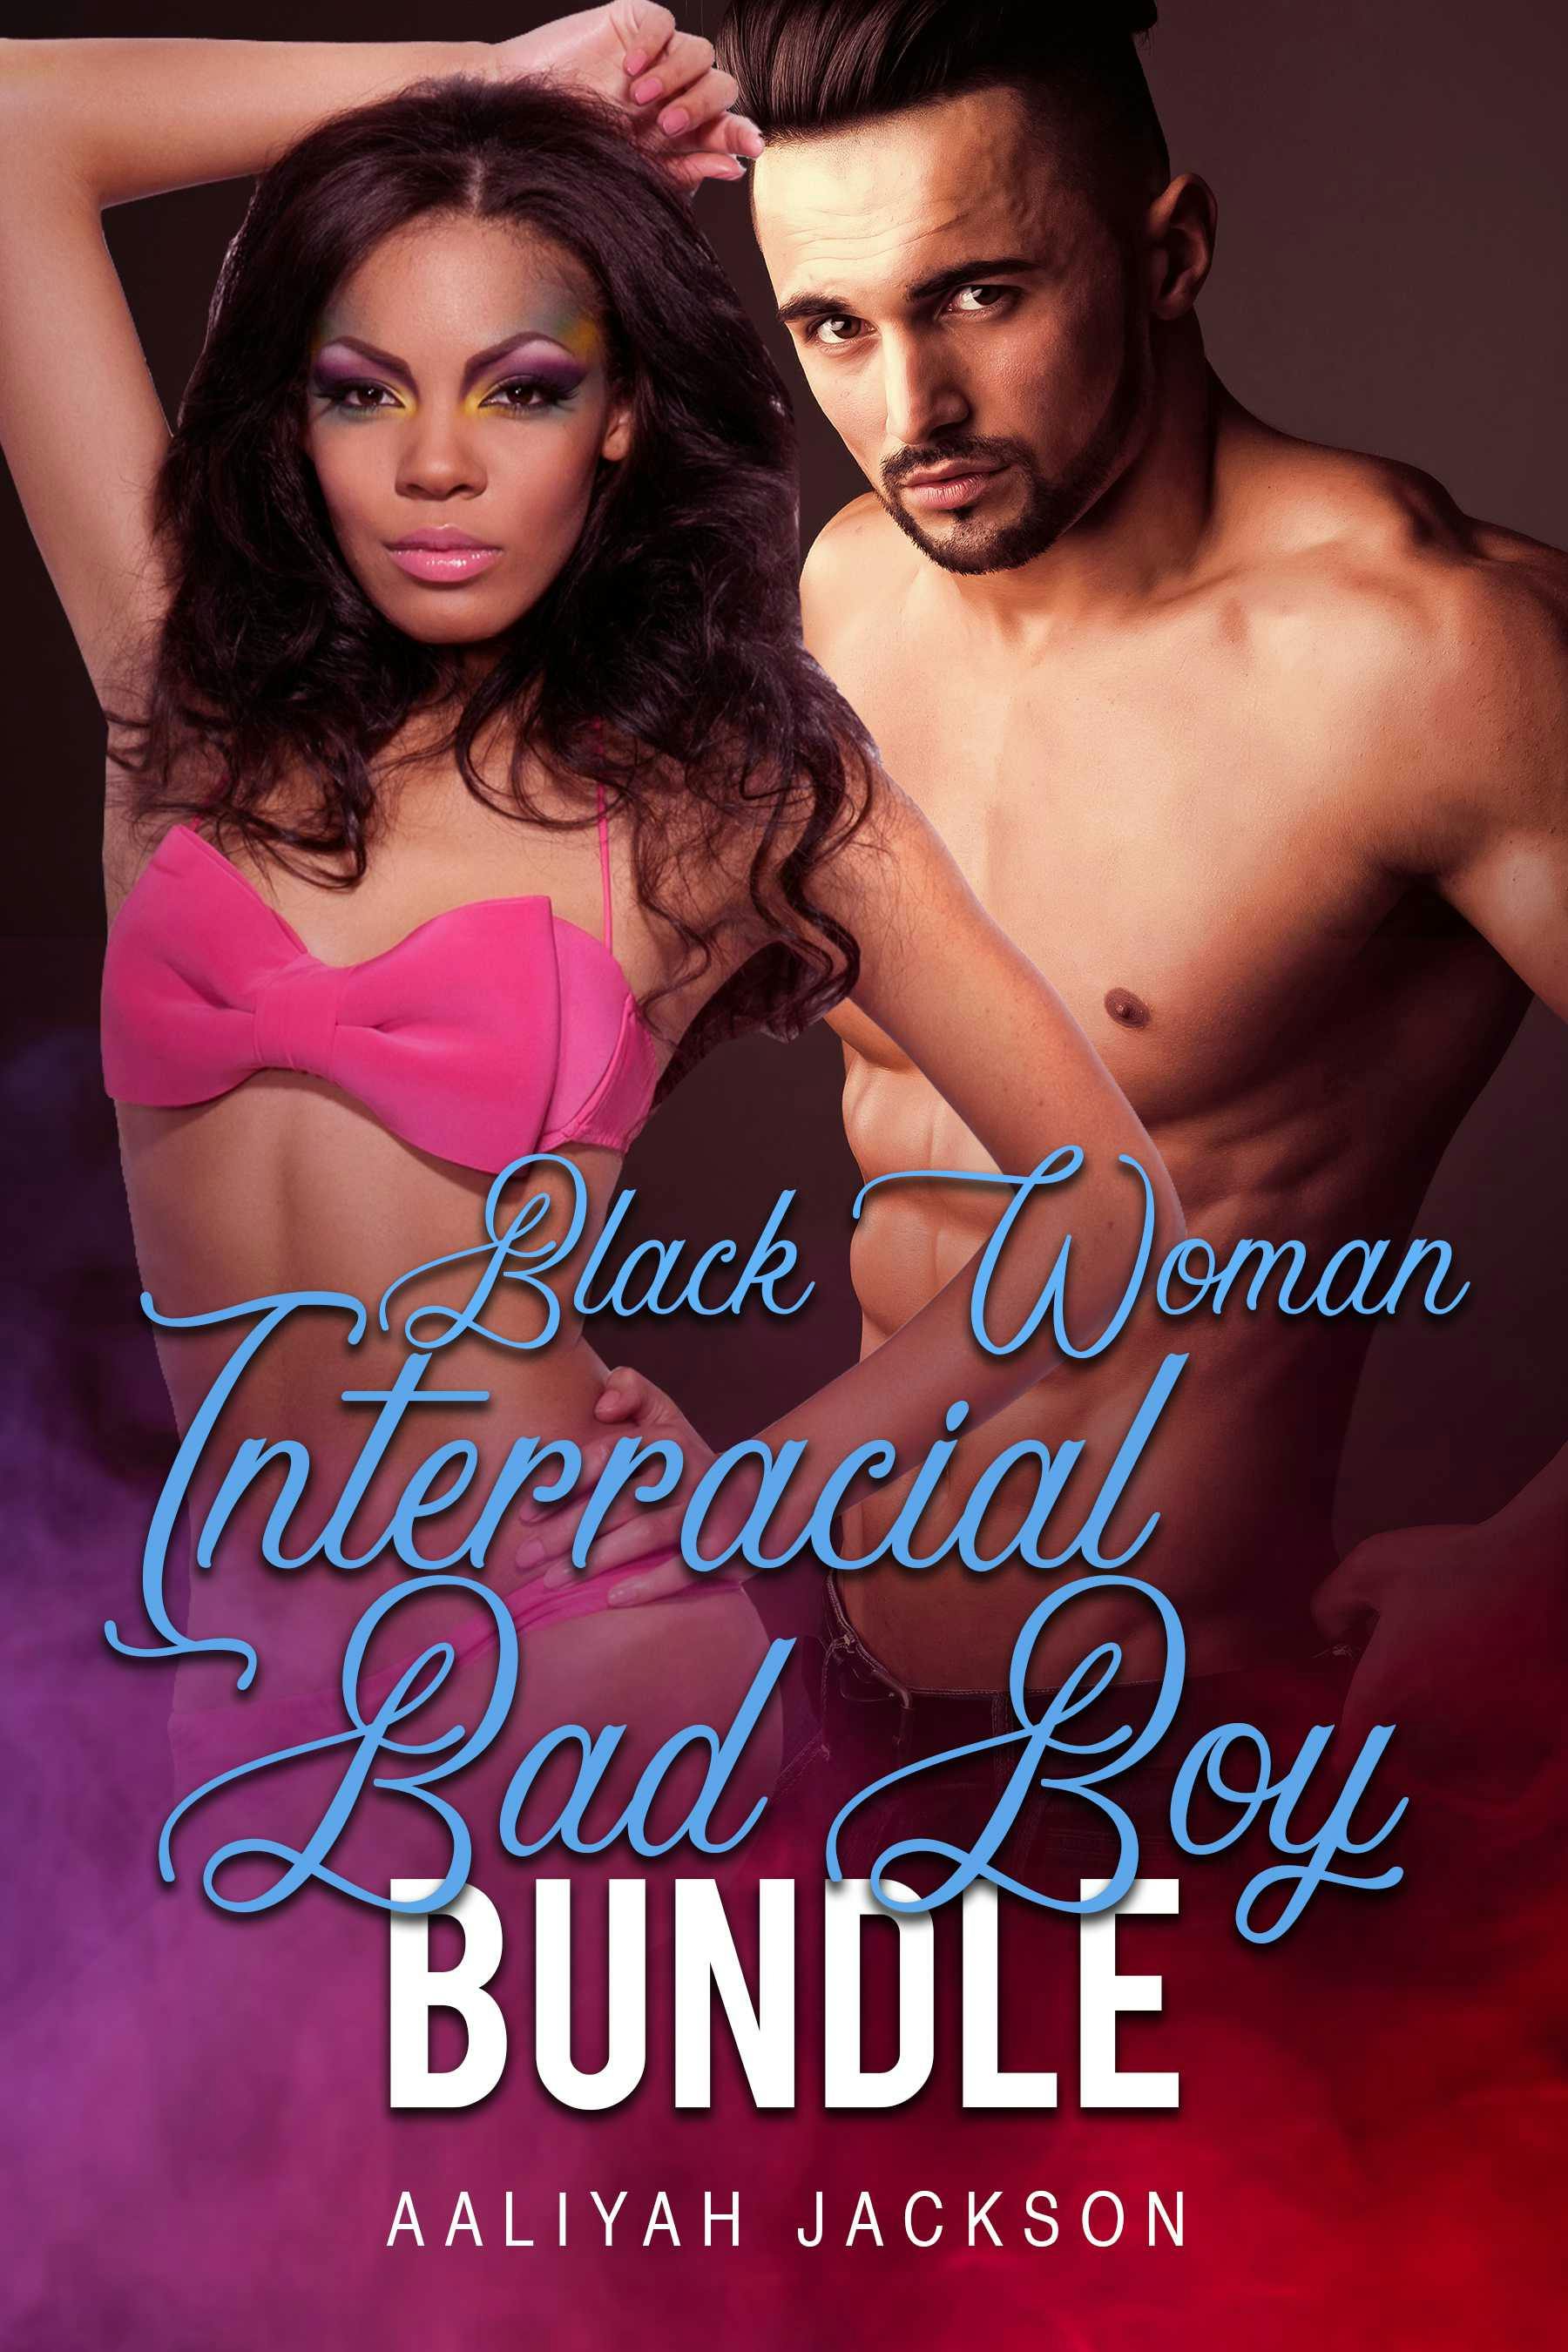 Black Woman & Interracial Bad Boy Bundle - Aaliyah Jackson